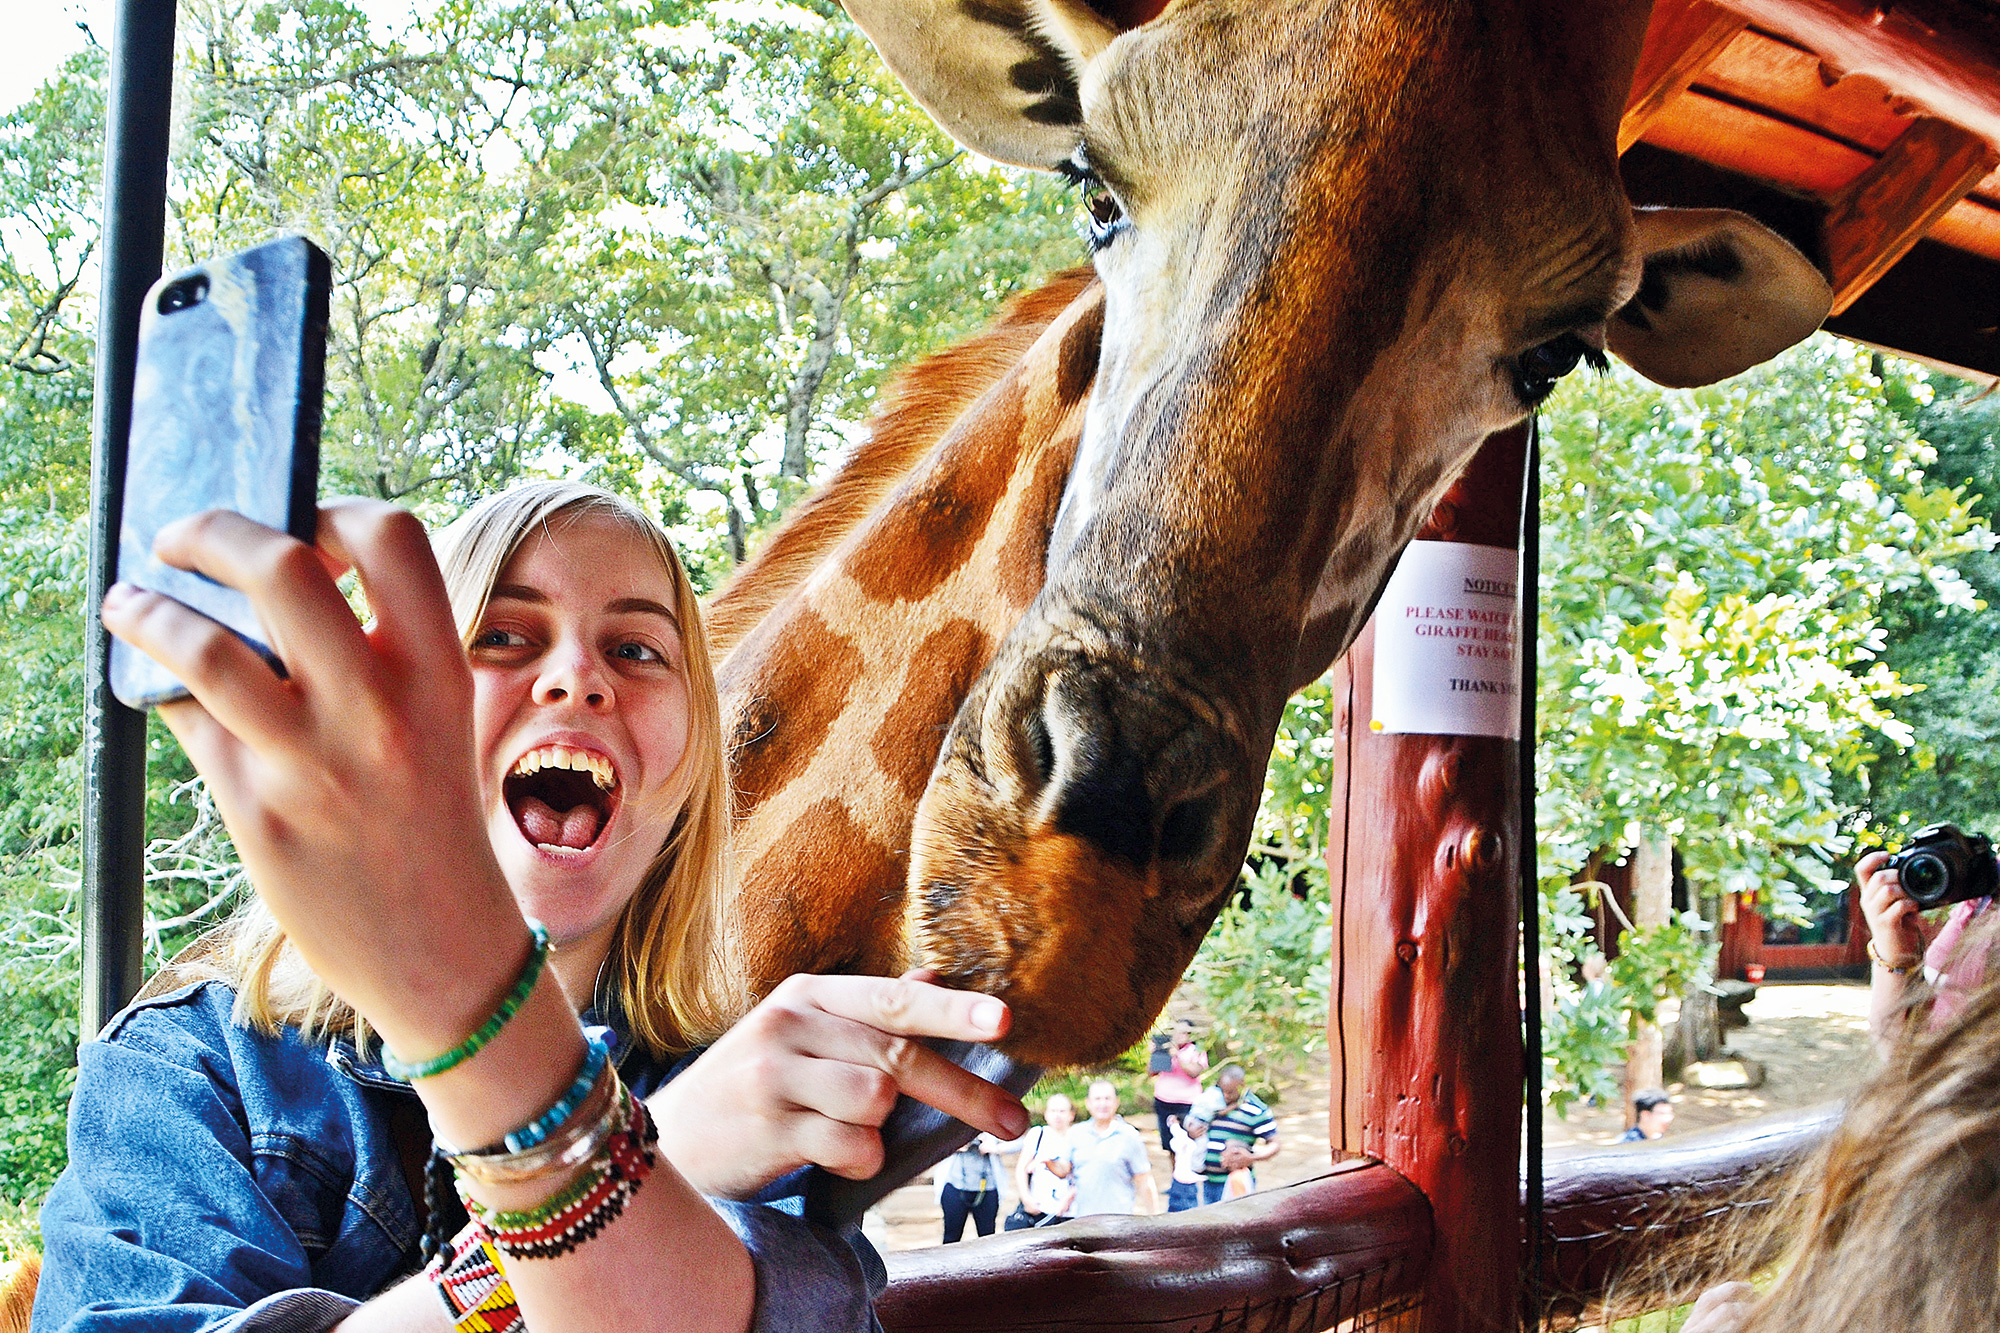 Højskoleelev tager selfie med giraf. Besøg på opdrætssted for den sjældne Rothschild giraf